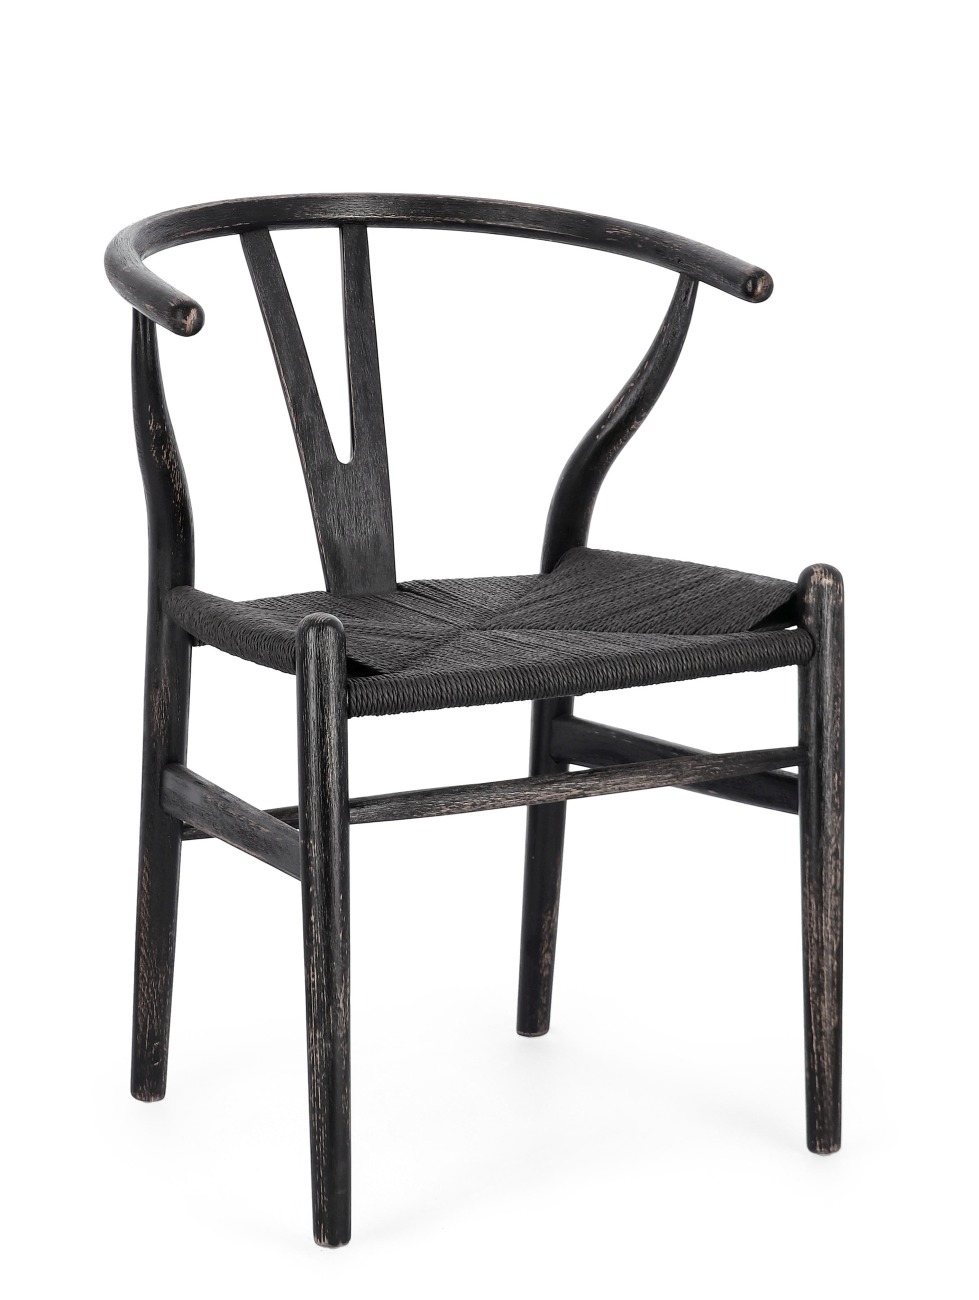 Der Esszimmerstuhl Artas überzeugt mit seinem modernen Stil. Gefertigt wurde er aus Seilen, welche einen schwarzen Farbton besitzt. Das Gestell ist aus Buchenholz und hat ein schwarze Farbe. Der Stuhl besitzt eine Sitzhöhe von 48 cm.